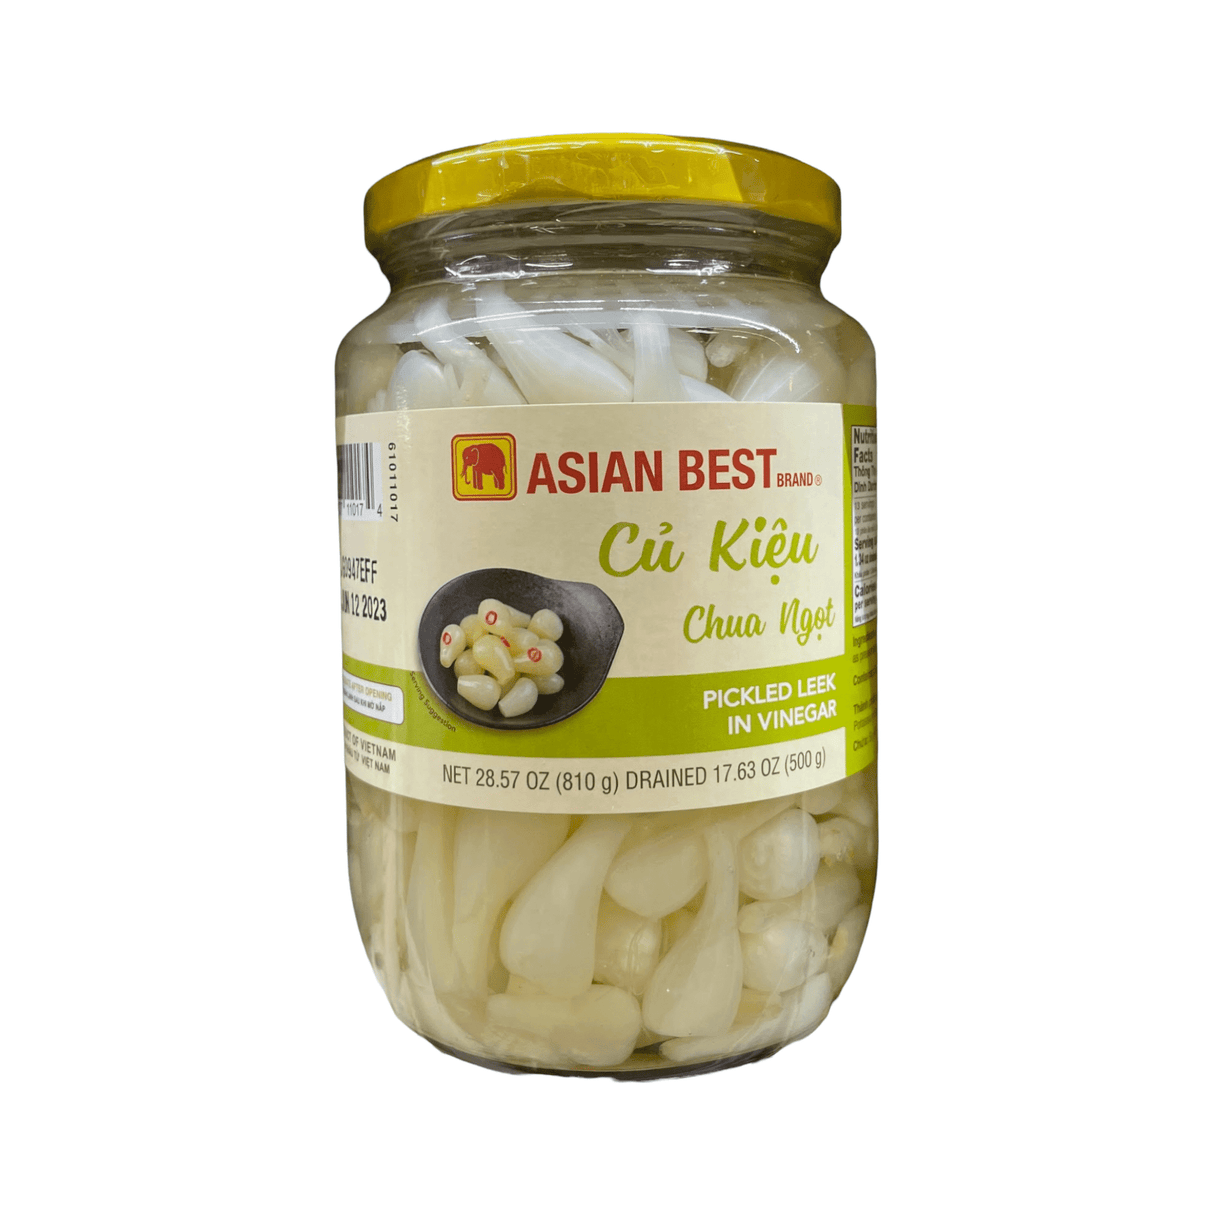 Asian Best Brand Pickled Leek in Vinegar